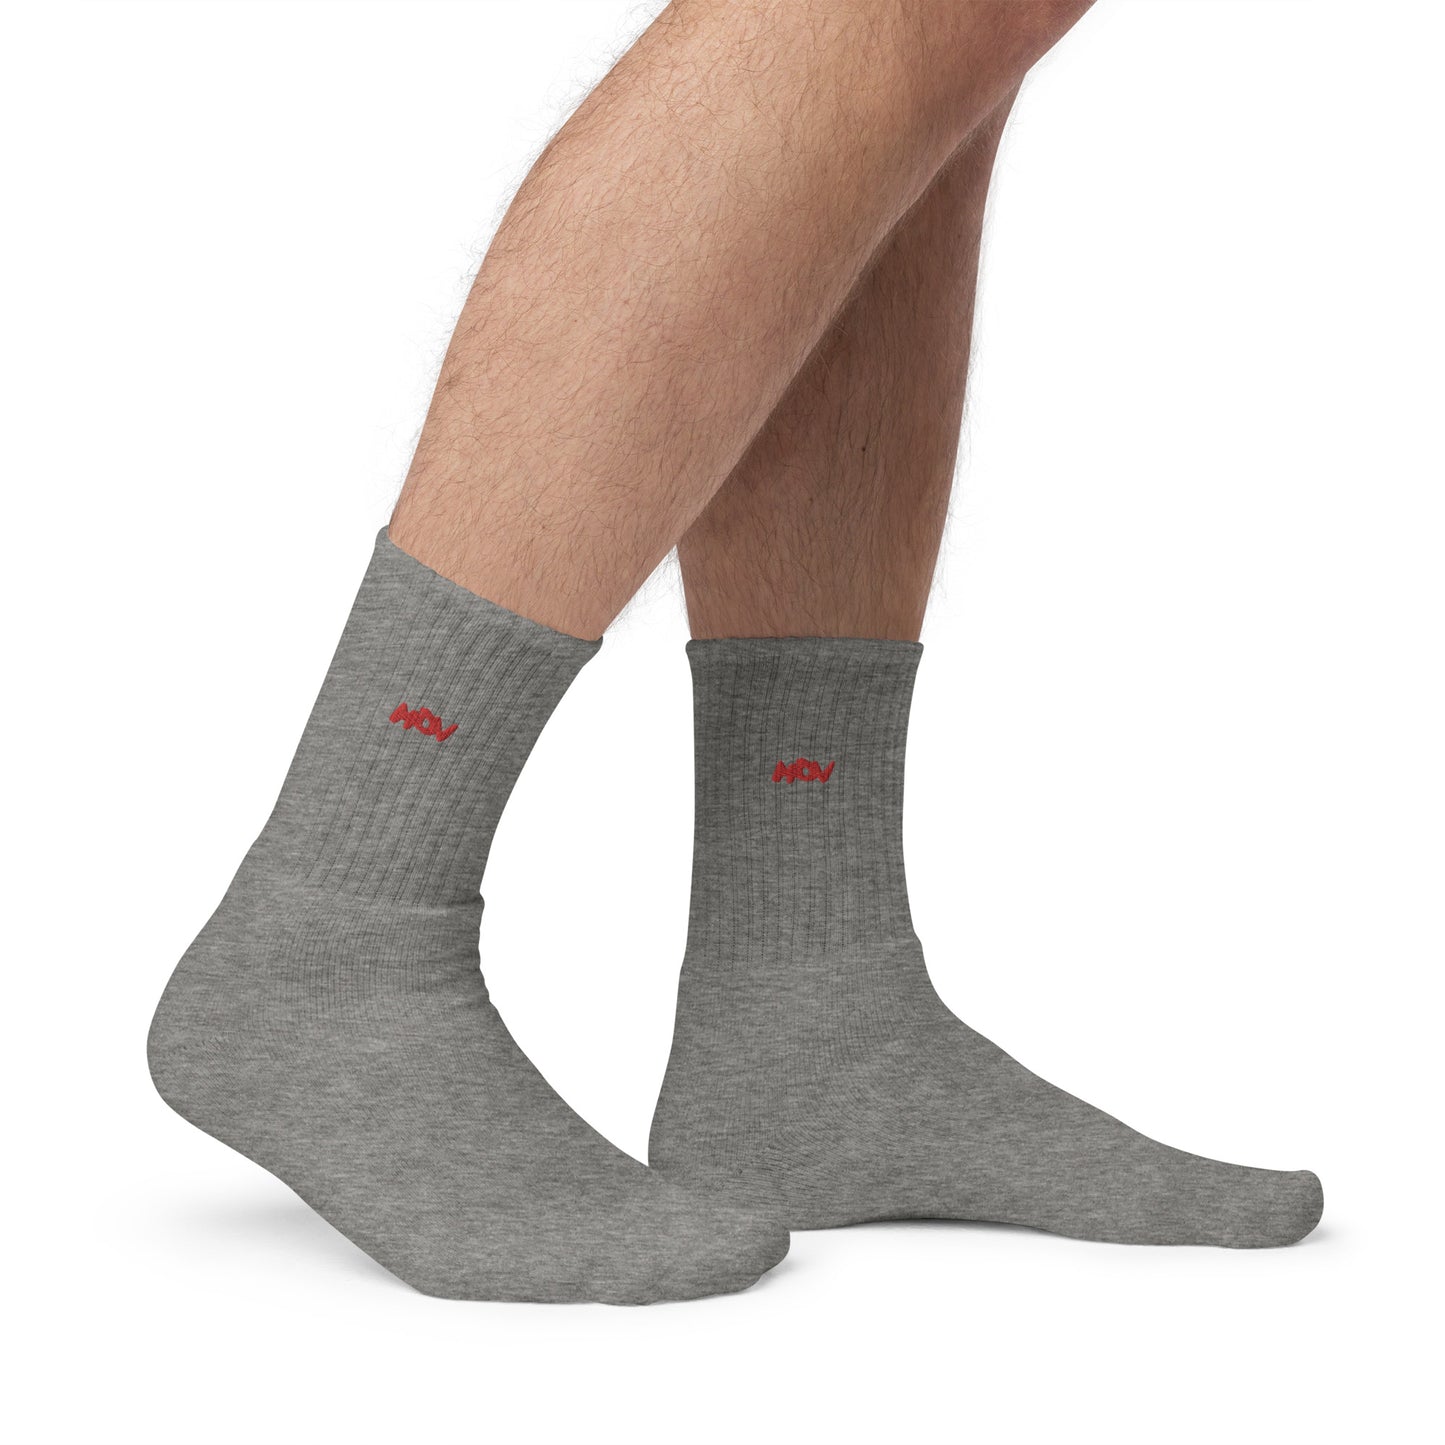 MDV socks